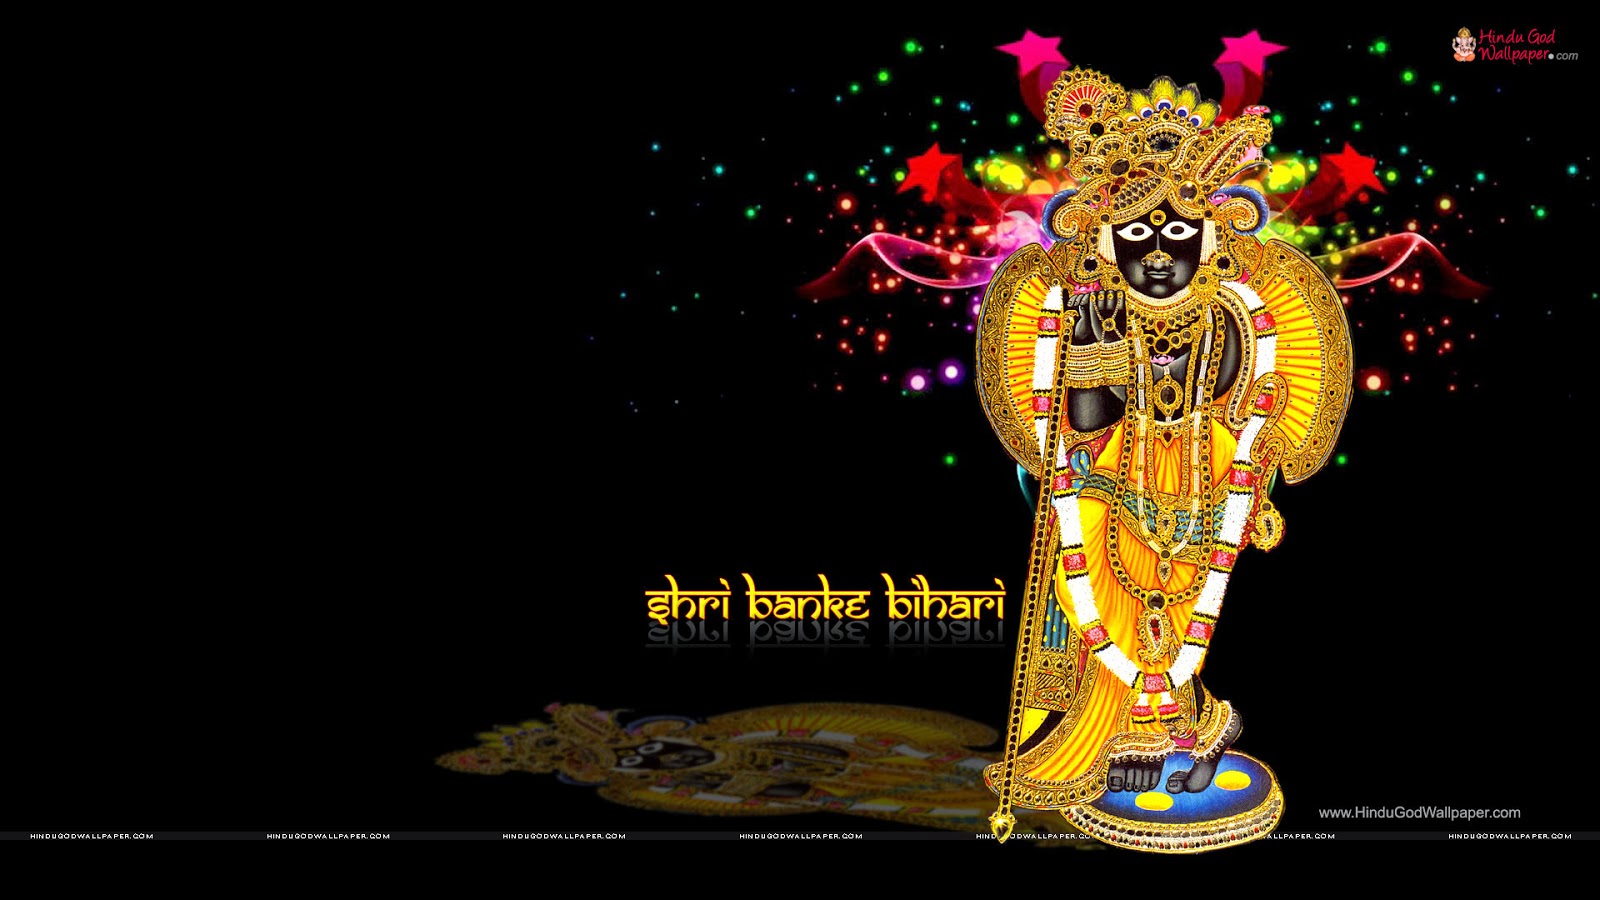 Shri Banke Bihari Lal ji Wallpapers | Dheeraj4uall : Music, Culture &  Literature